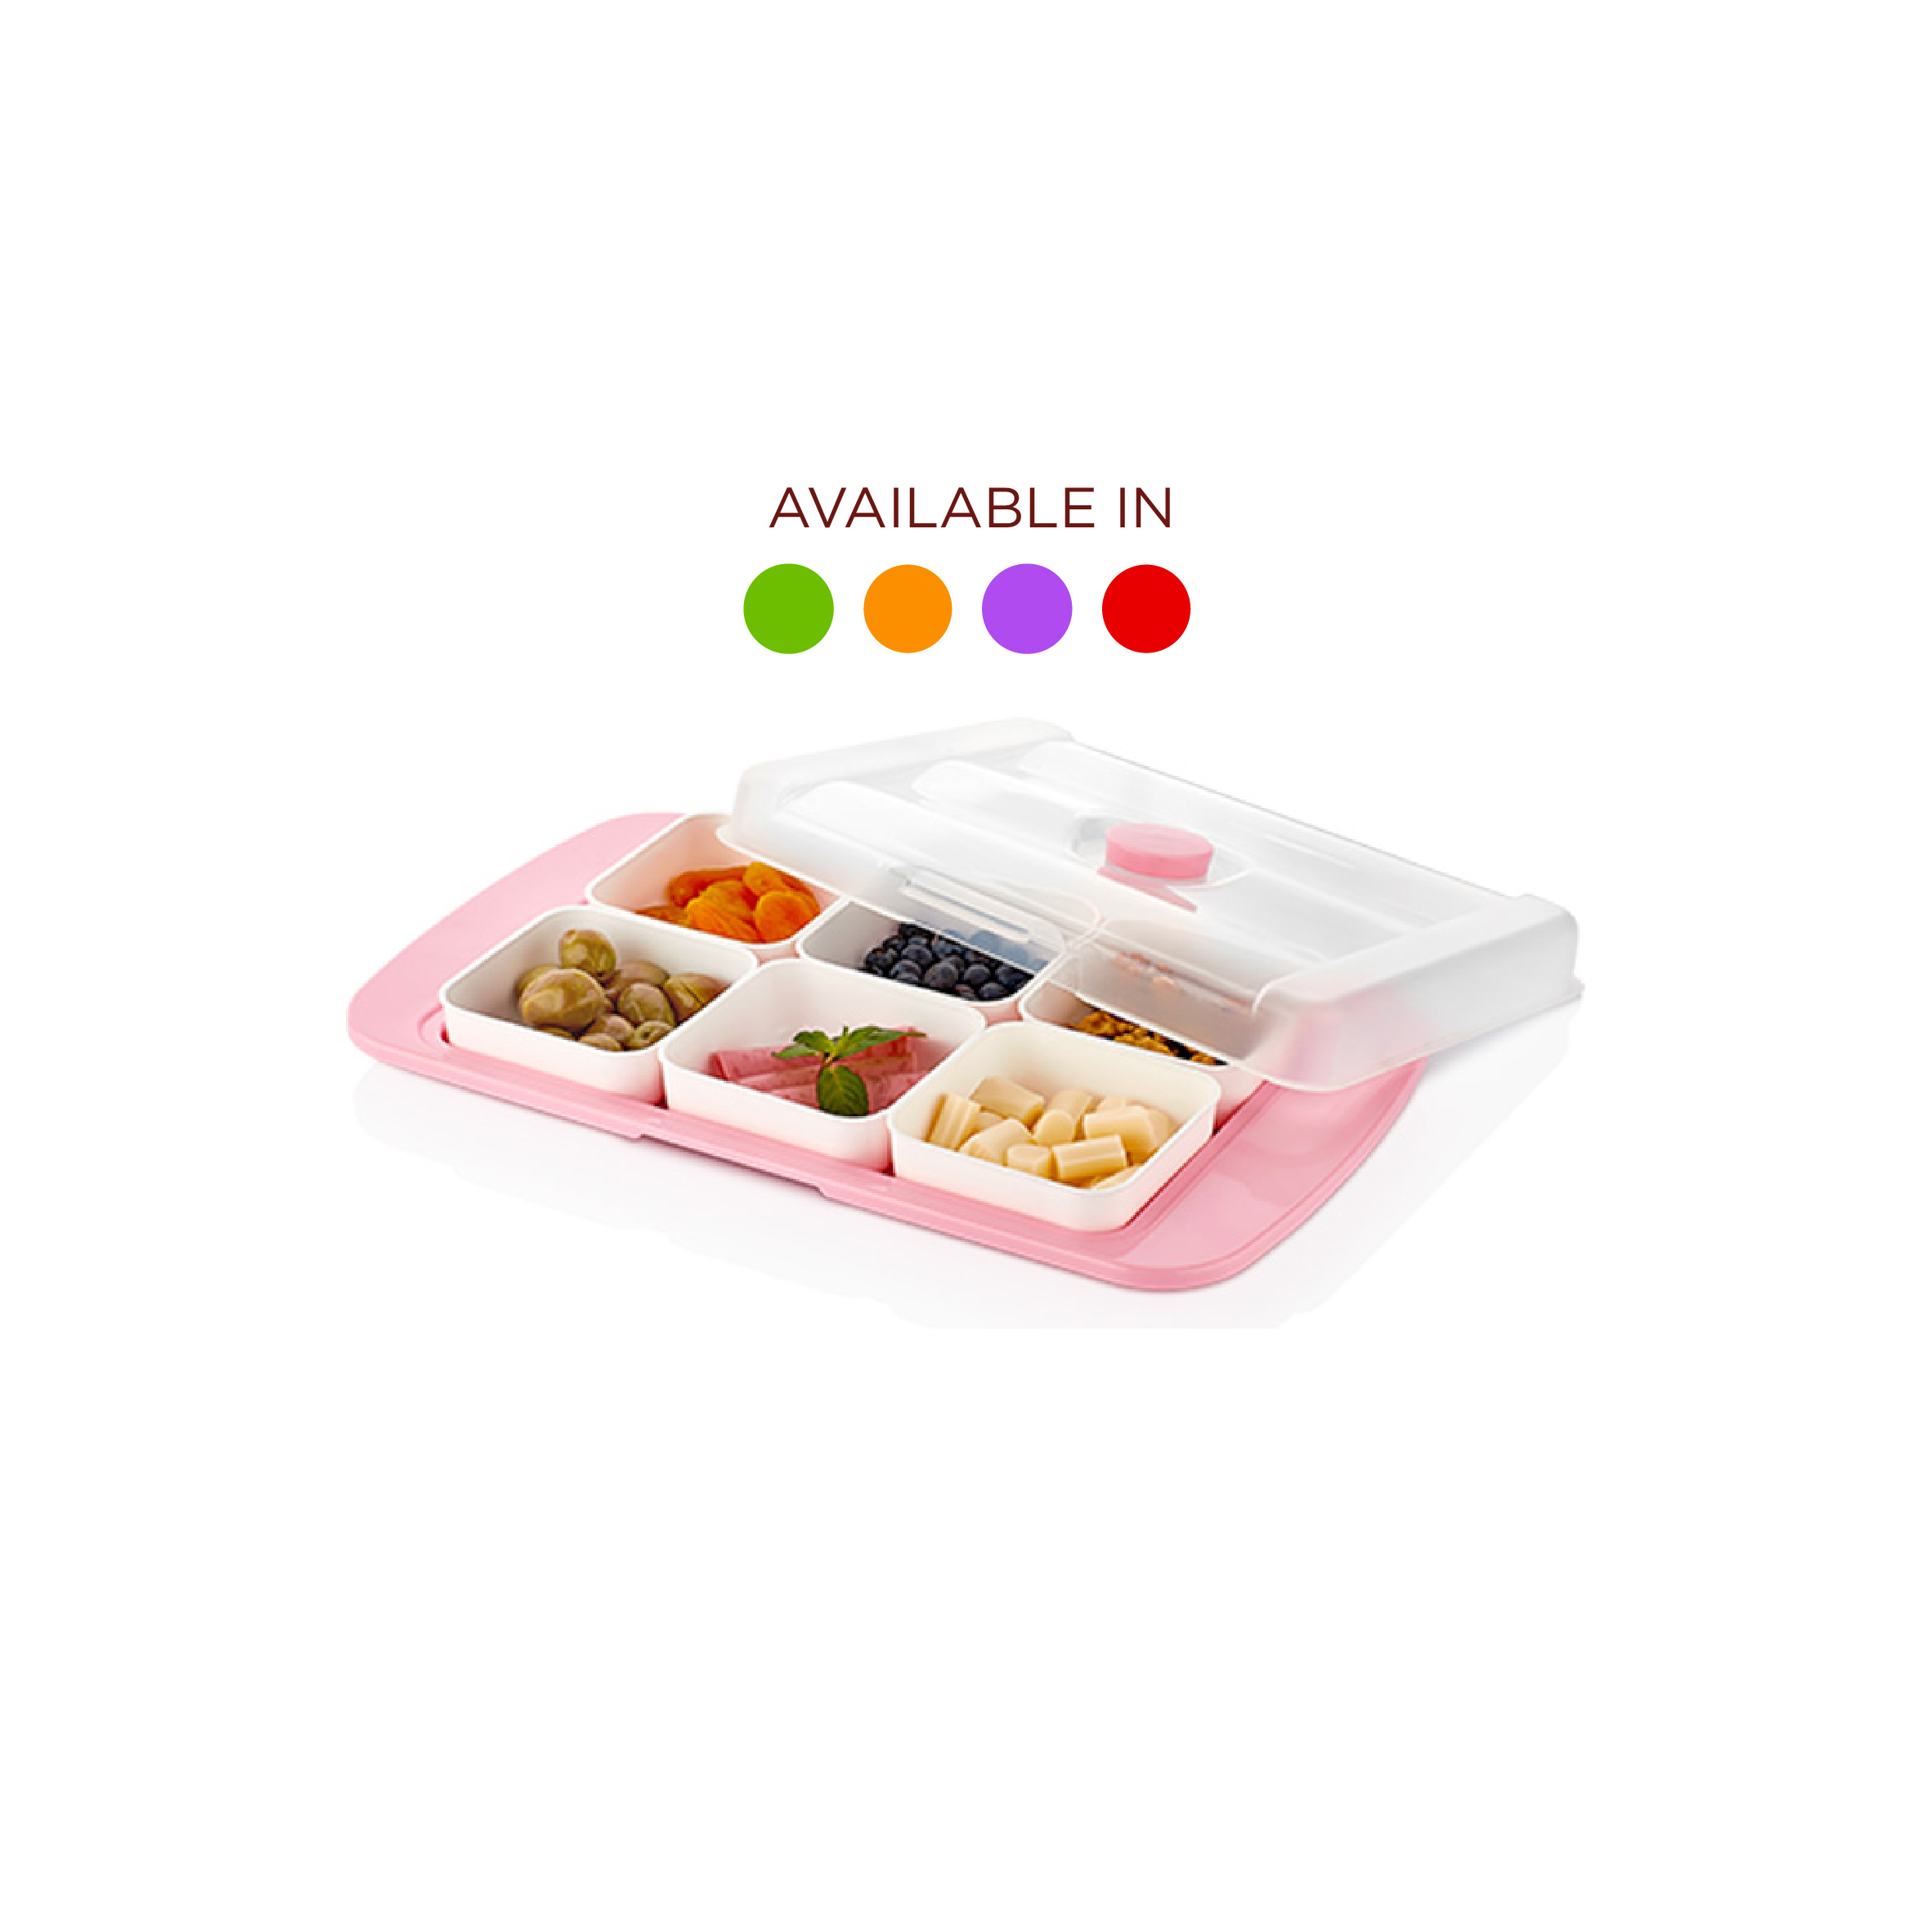 Urve Rectangular Breakfast Set (Available in Green / Orange / Violet / Red), UR-3305